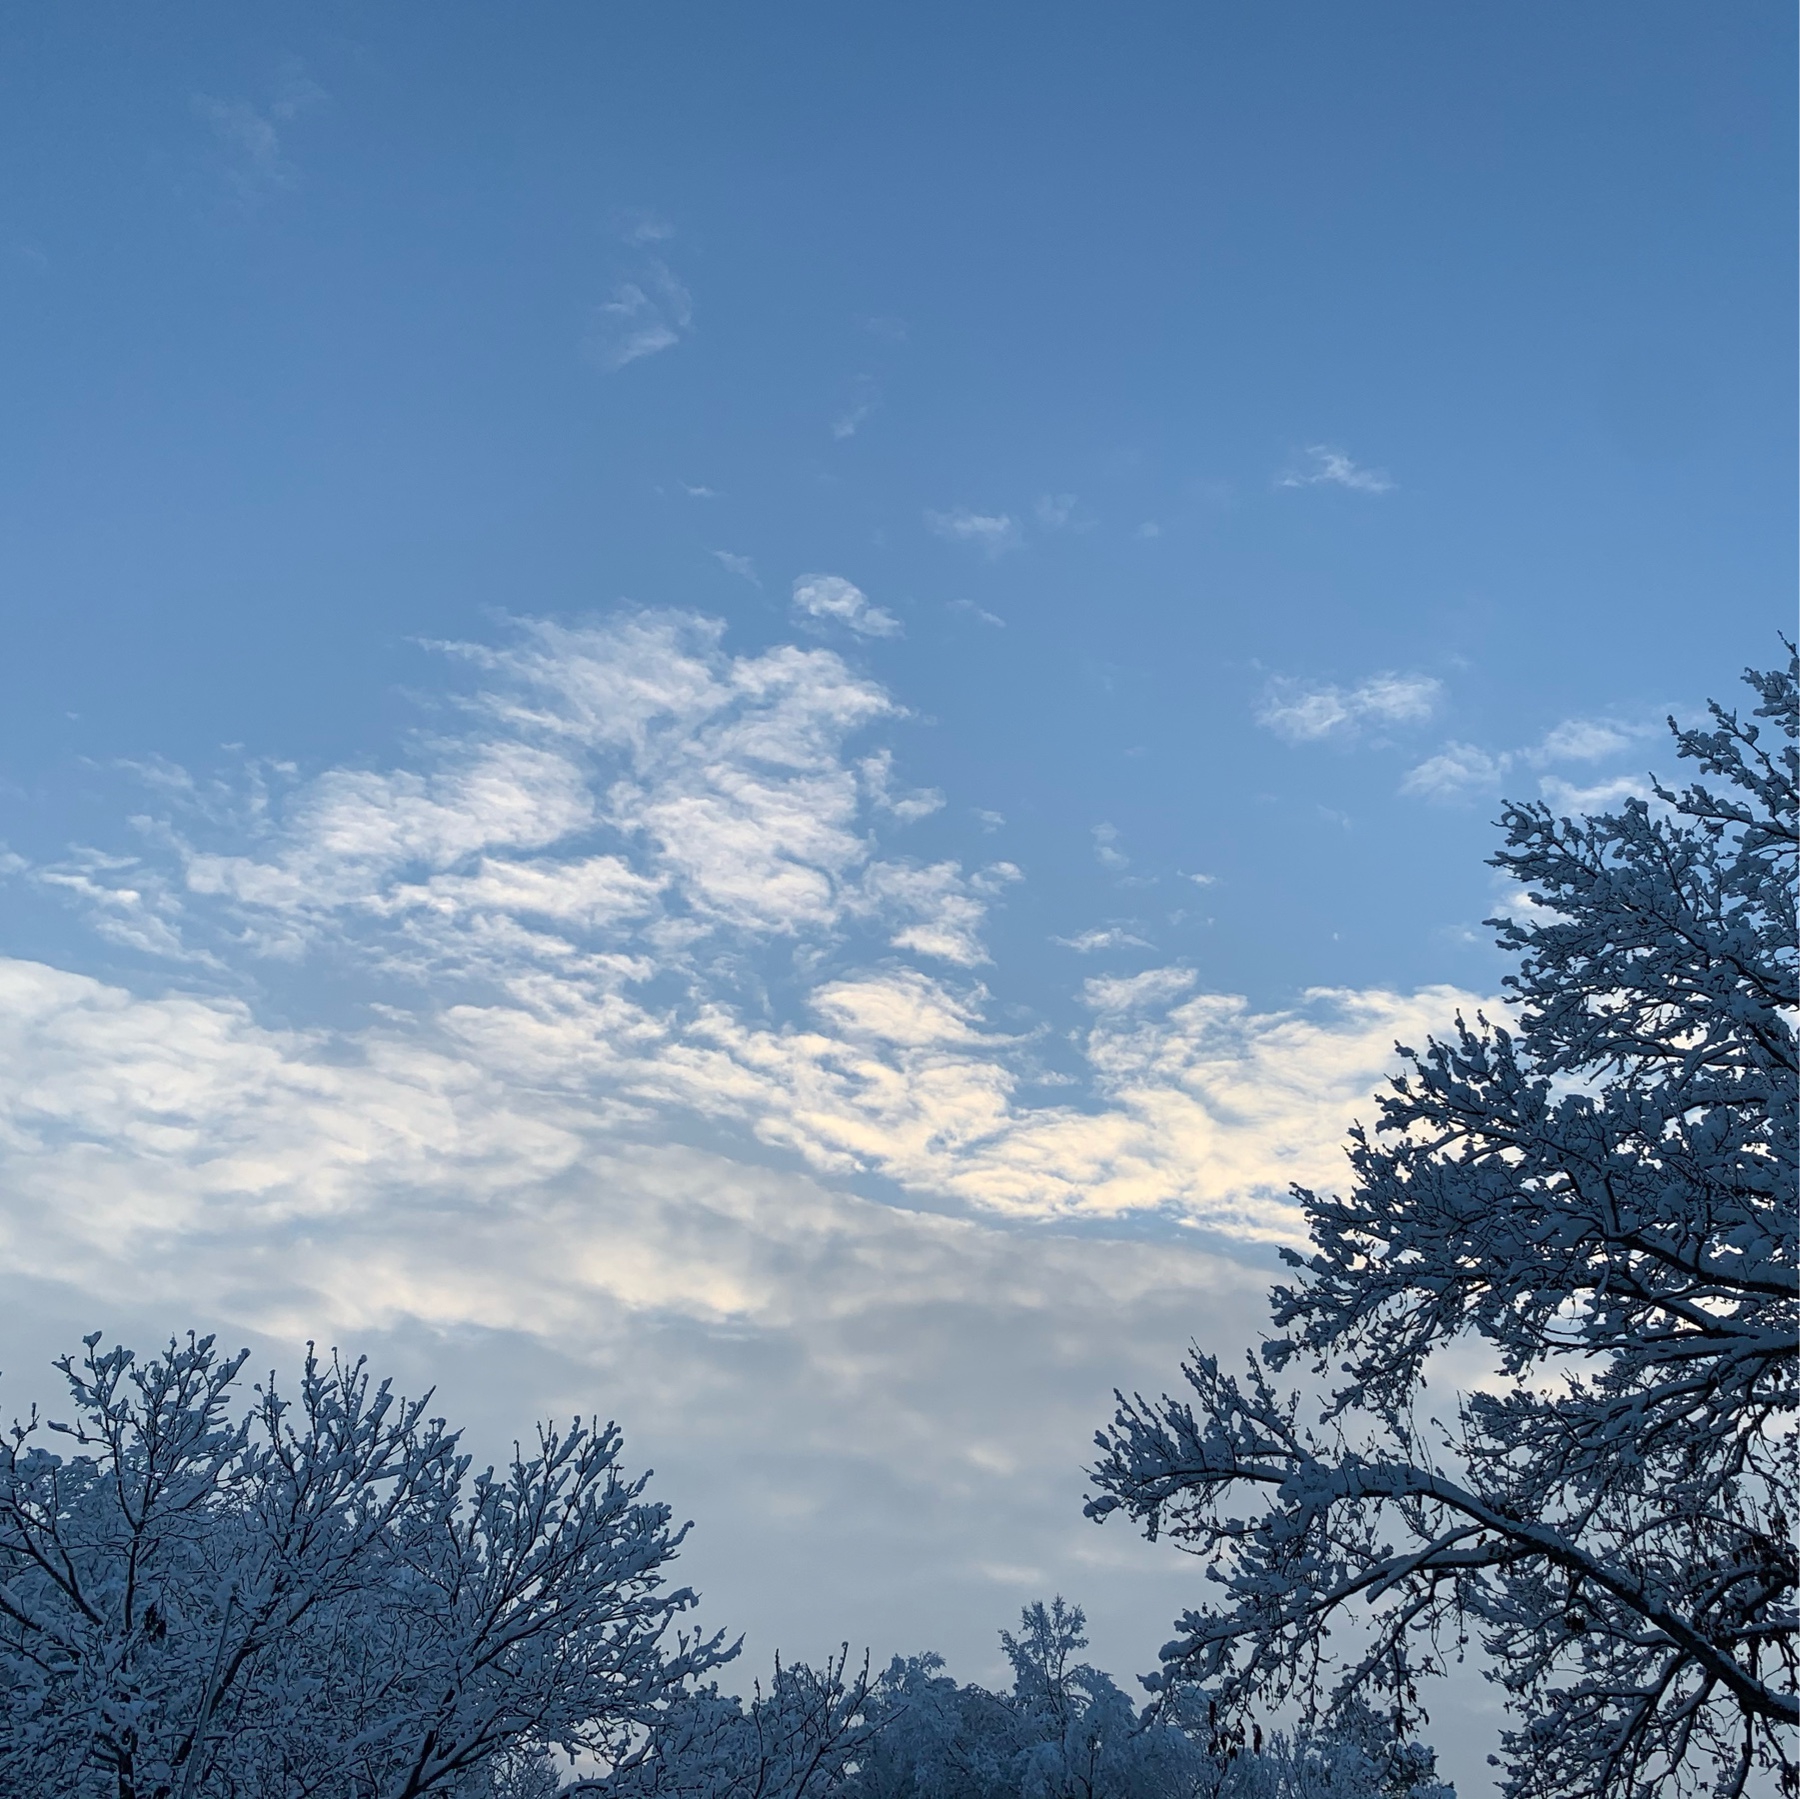 Snow on trees, clear sky